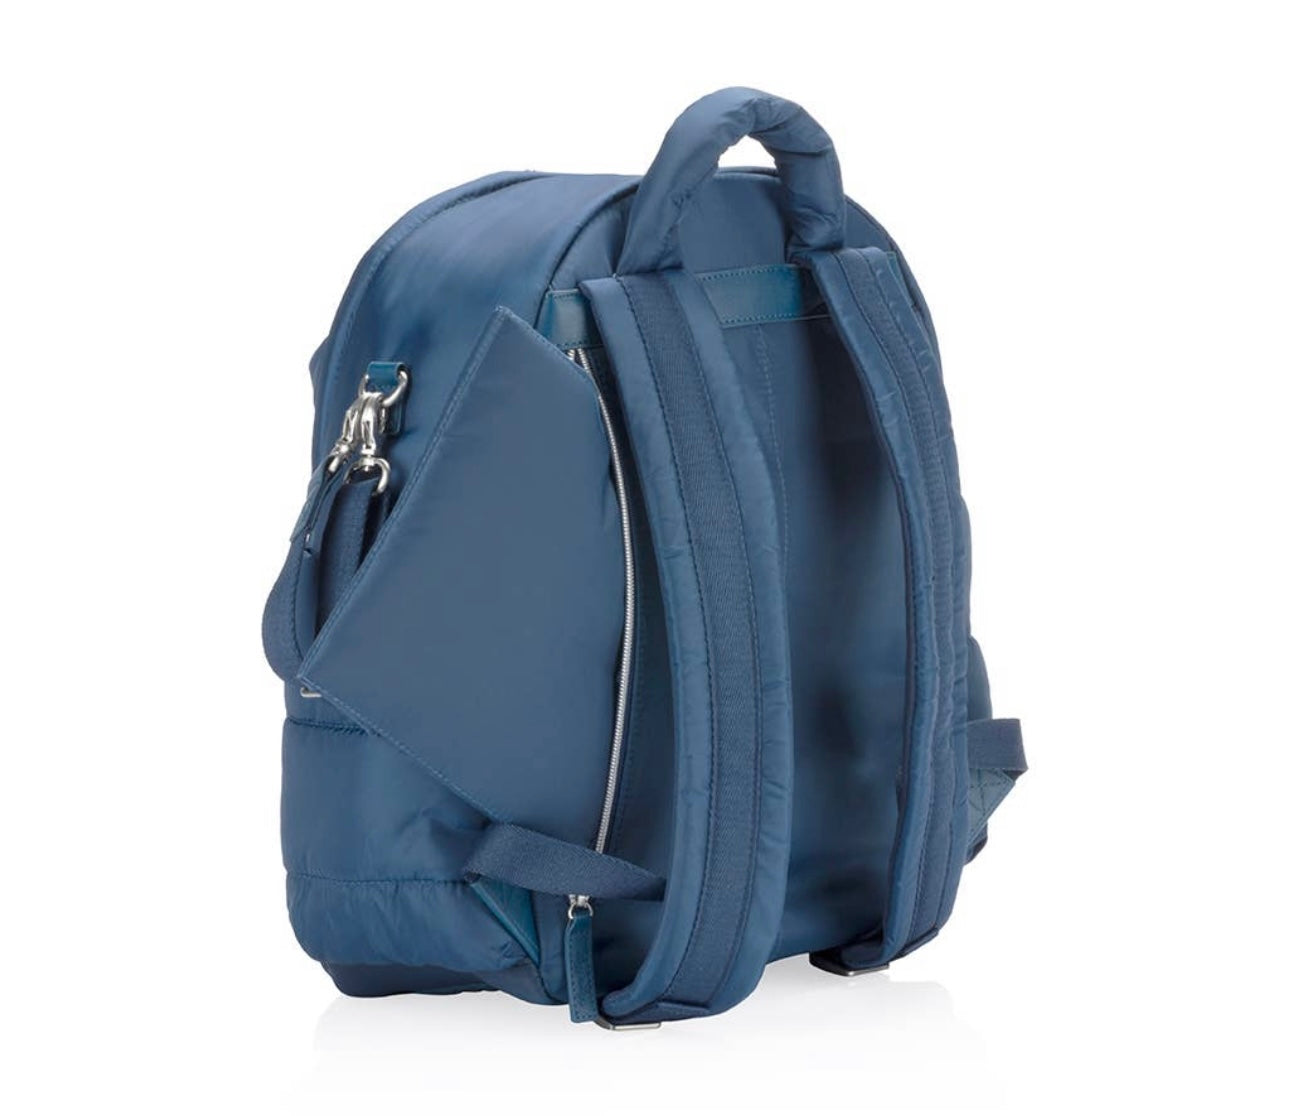 Dream Backpack Diaper Bag Sapphire Starlight